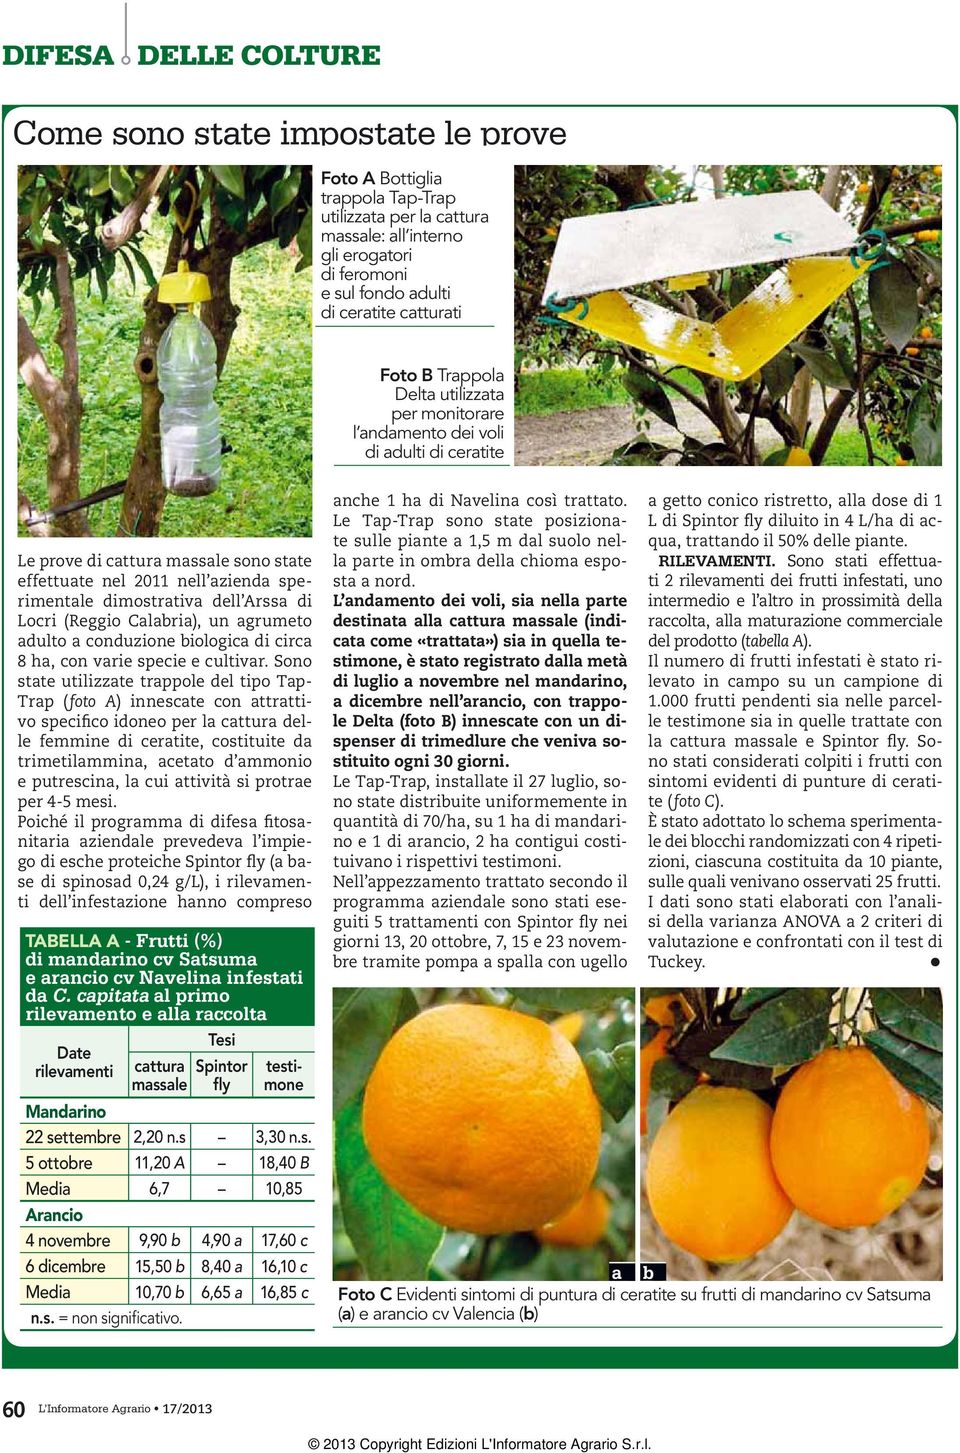 (Reggio Calabria), un agrumeto adulto a conduzione biologica di circa 8 ha, con varie specie e cultivar.